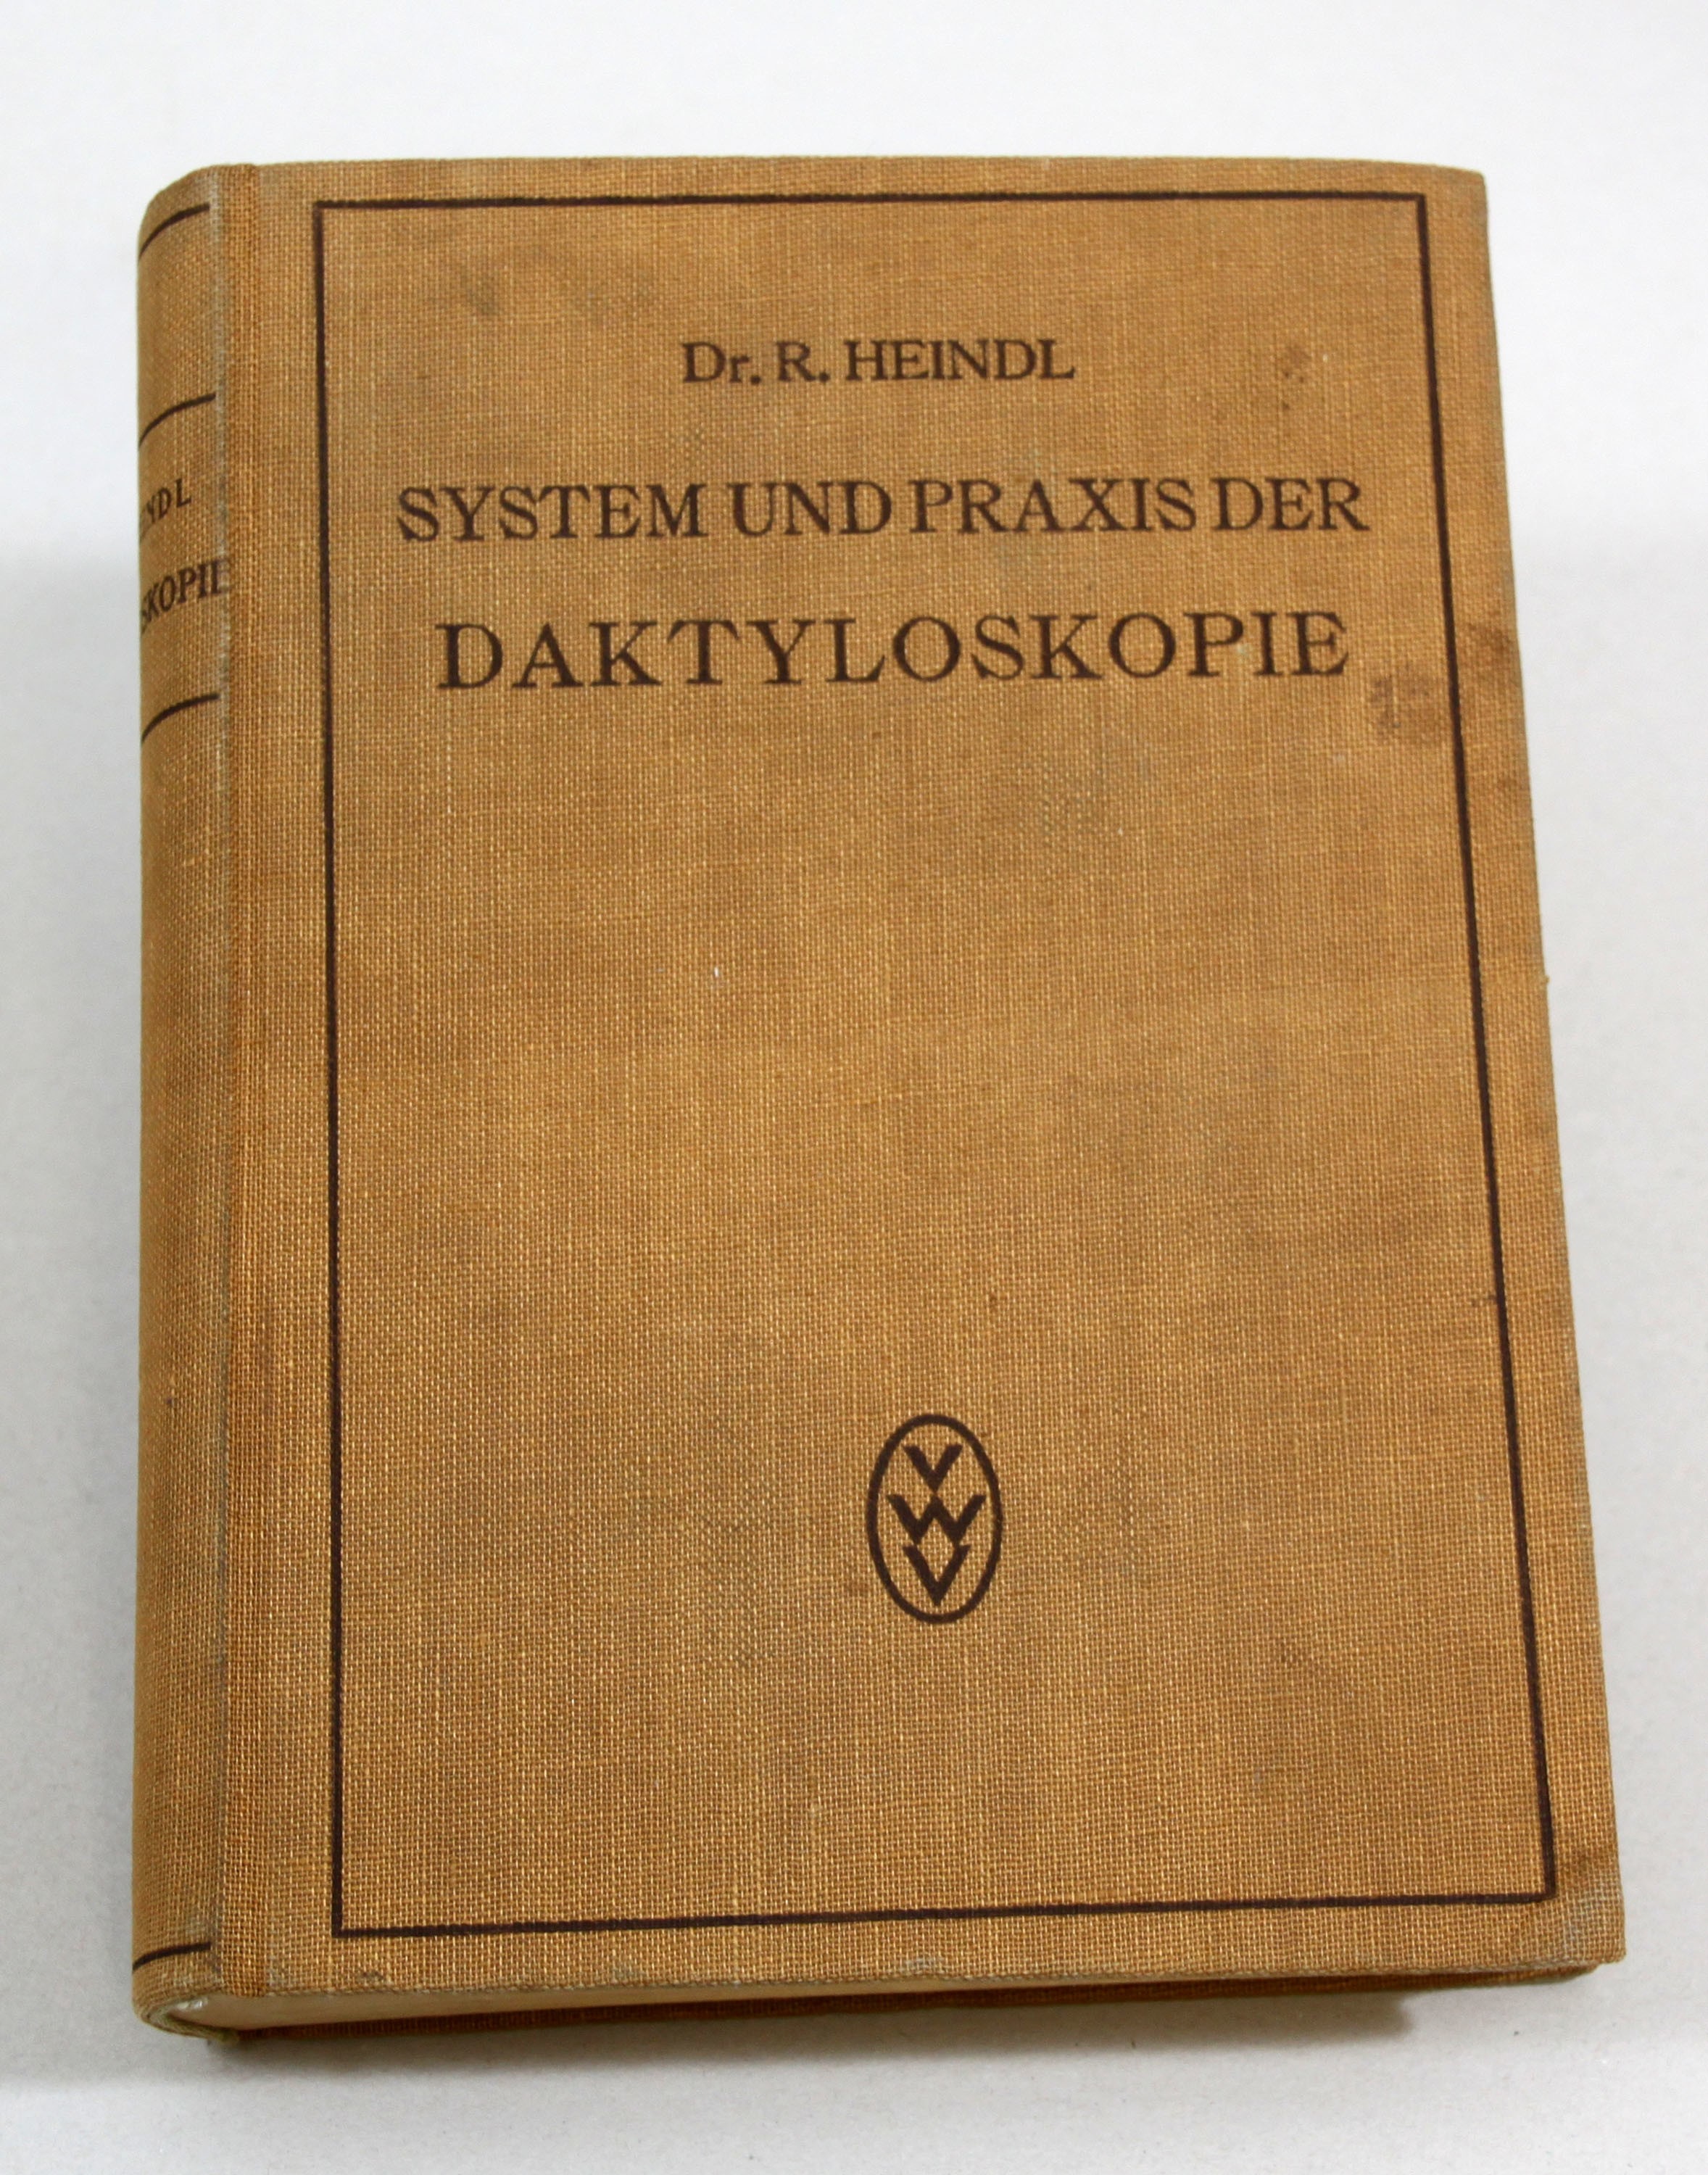 Buch "System und Praxis der Daktyloskopie" (Polizeidirektion Dresden RR-F)